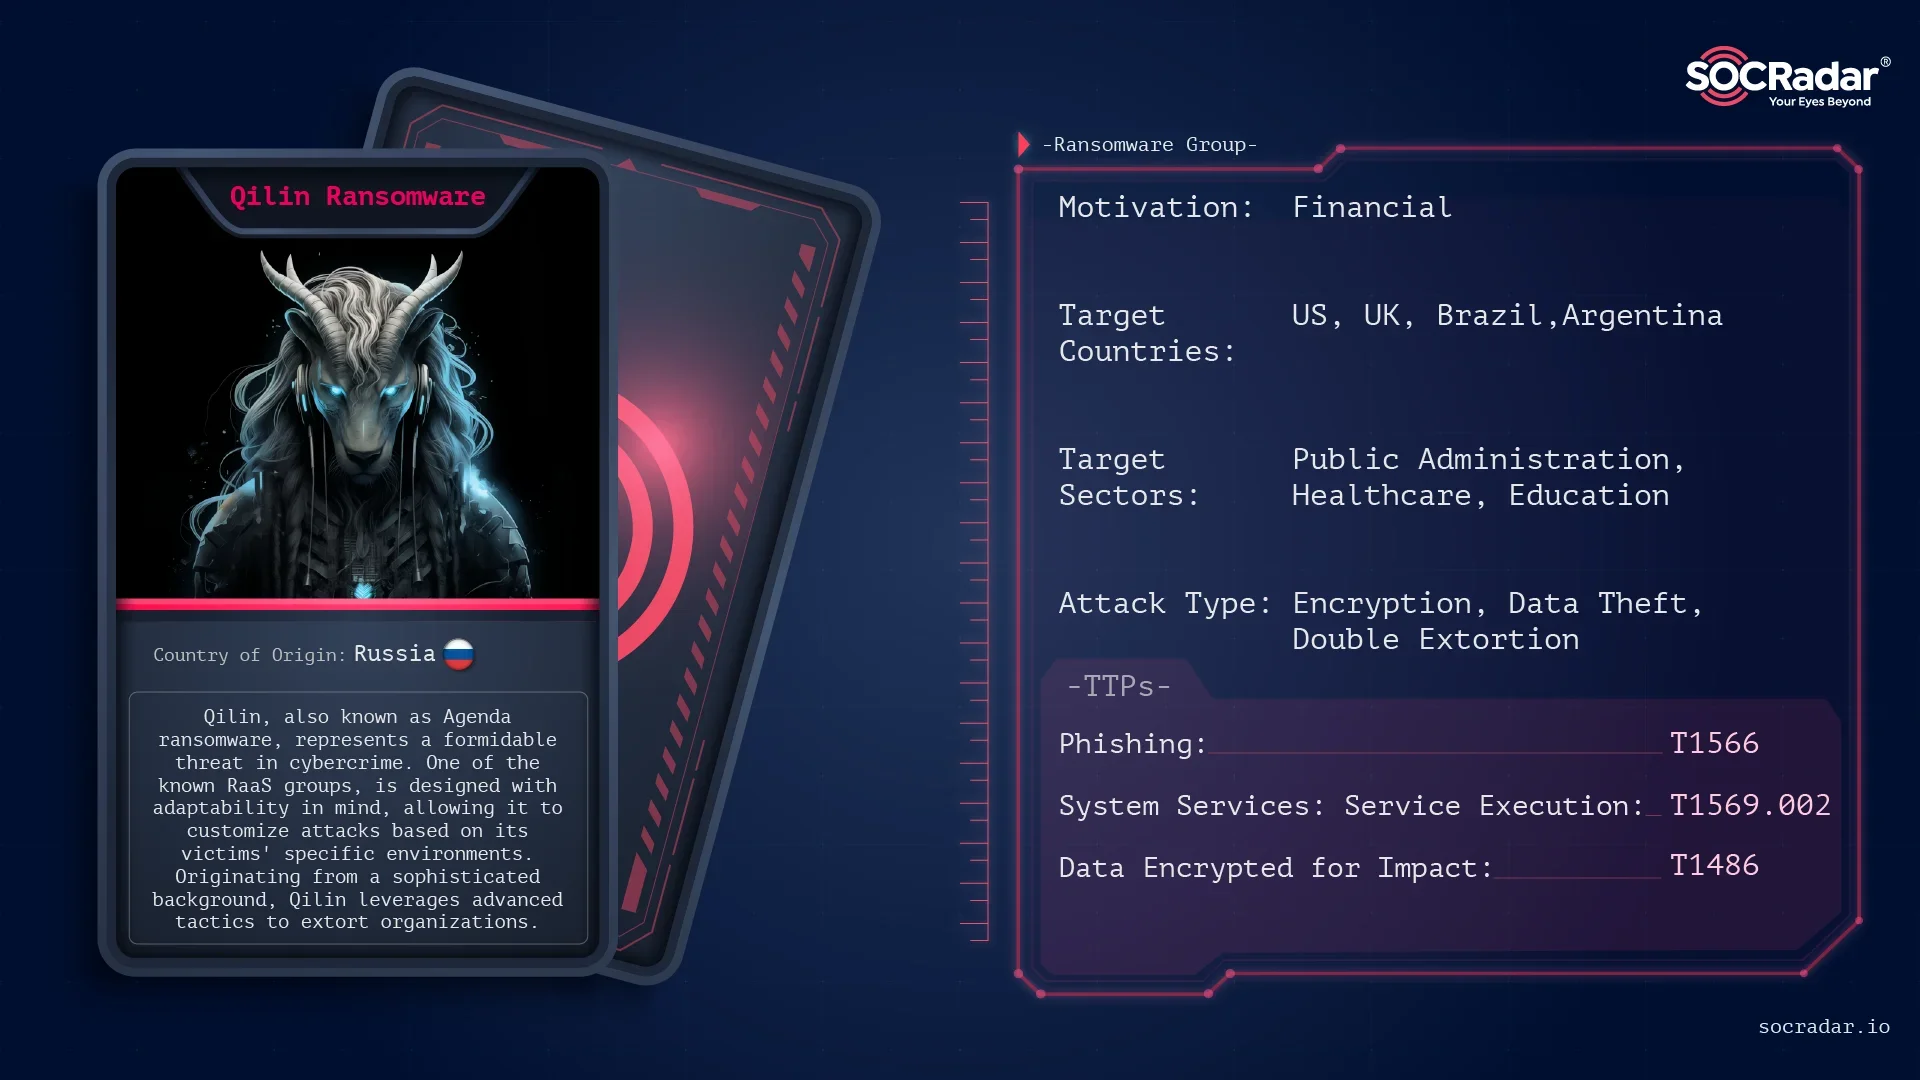 Dark Web Profile: Qilin (Agenda) Ransomware